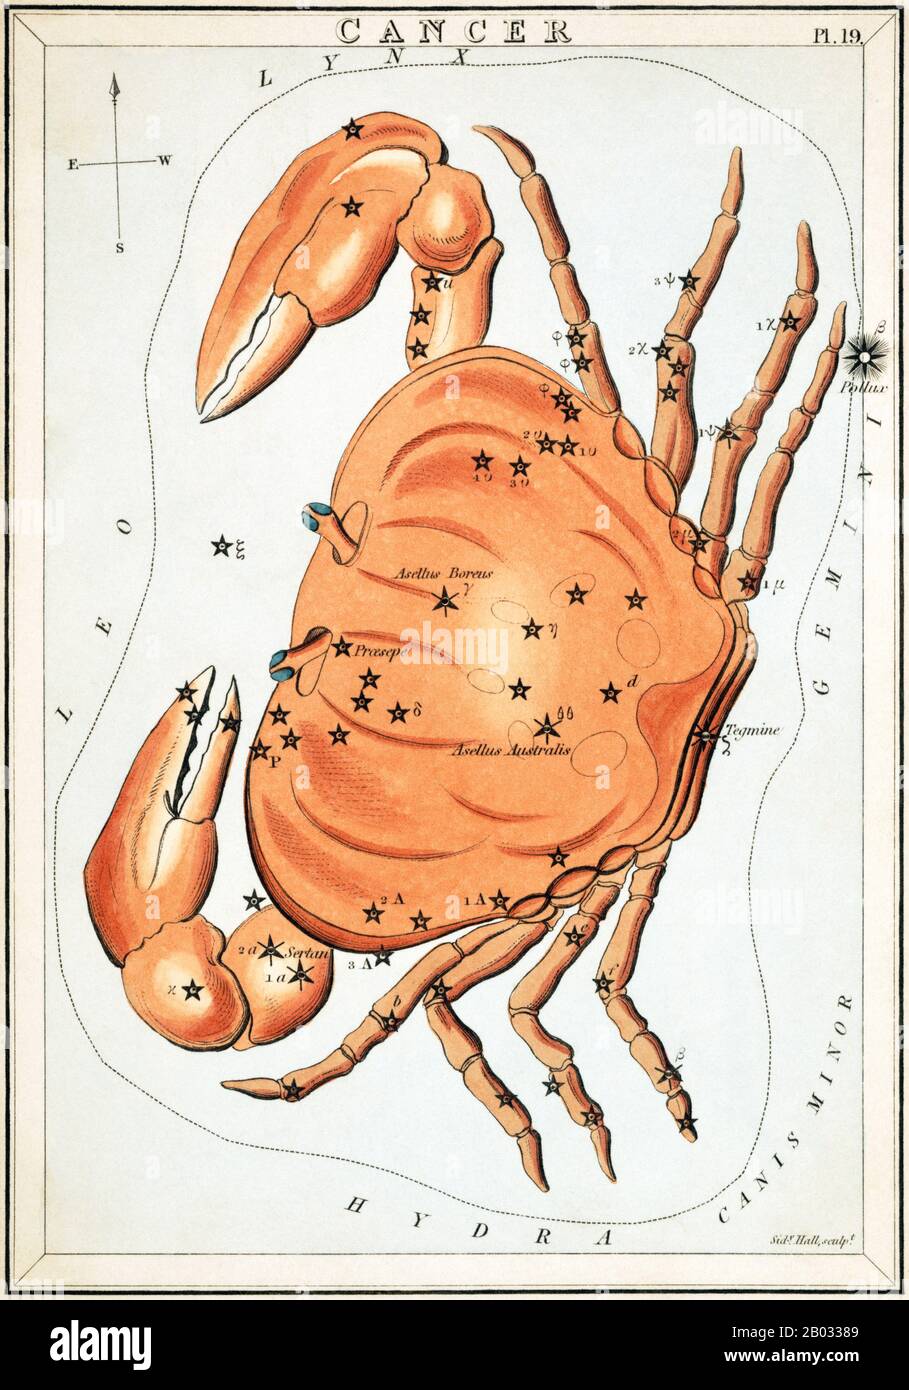 Urania's Mirror; ou, une vue des Cieux est un ensemble de 32 cartes astronomiques de cartes à étoiles, publiées pour la première fois en novembre 1824. Ils avaient des illustrations basées sur l'Atlas céleste d'Alexander Jamieson, mais l'ajout de trous perforés les a permis de les tenir jusqu'à une lumière pour voir une représentation des étoiles de la constellation. Ils ont été gravés par Sidney Hall, et auraient été conçus par une dame, mais ont depuis été identifiés comme le travail du révérend Richard Rouse Bloxam, un maître adjoint à l'école de Rugby. La couverture de la boîte-set a montré une représentation d'Urania, la muse de l'astronomie, an Banque D'Images